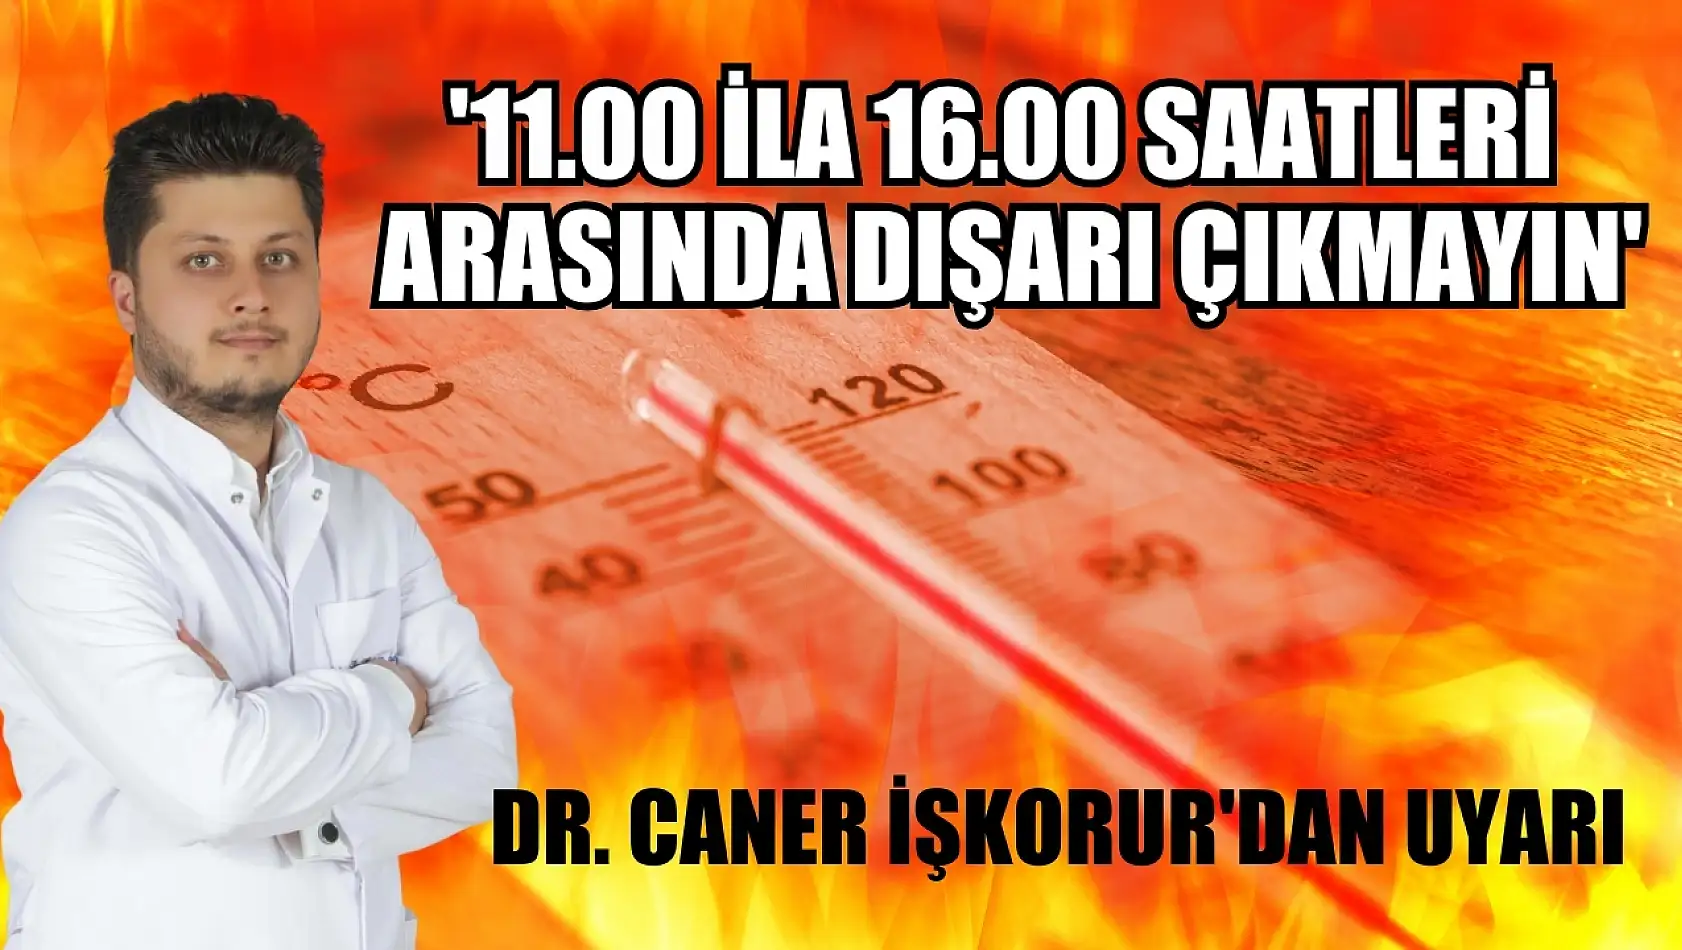 Dr. Caner İşkorur'dan uyarı: '11.00 ila 16.00 saatleri arasında dışarı çıkmayın'